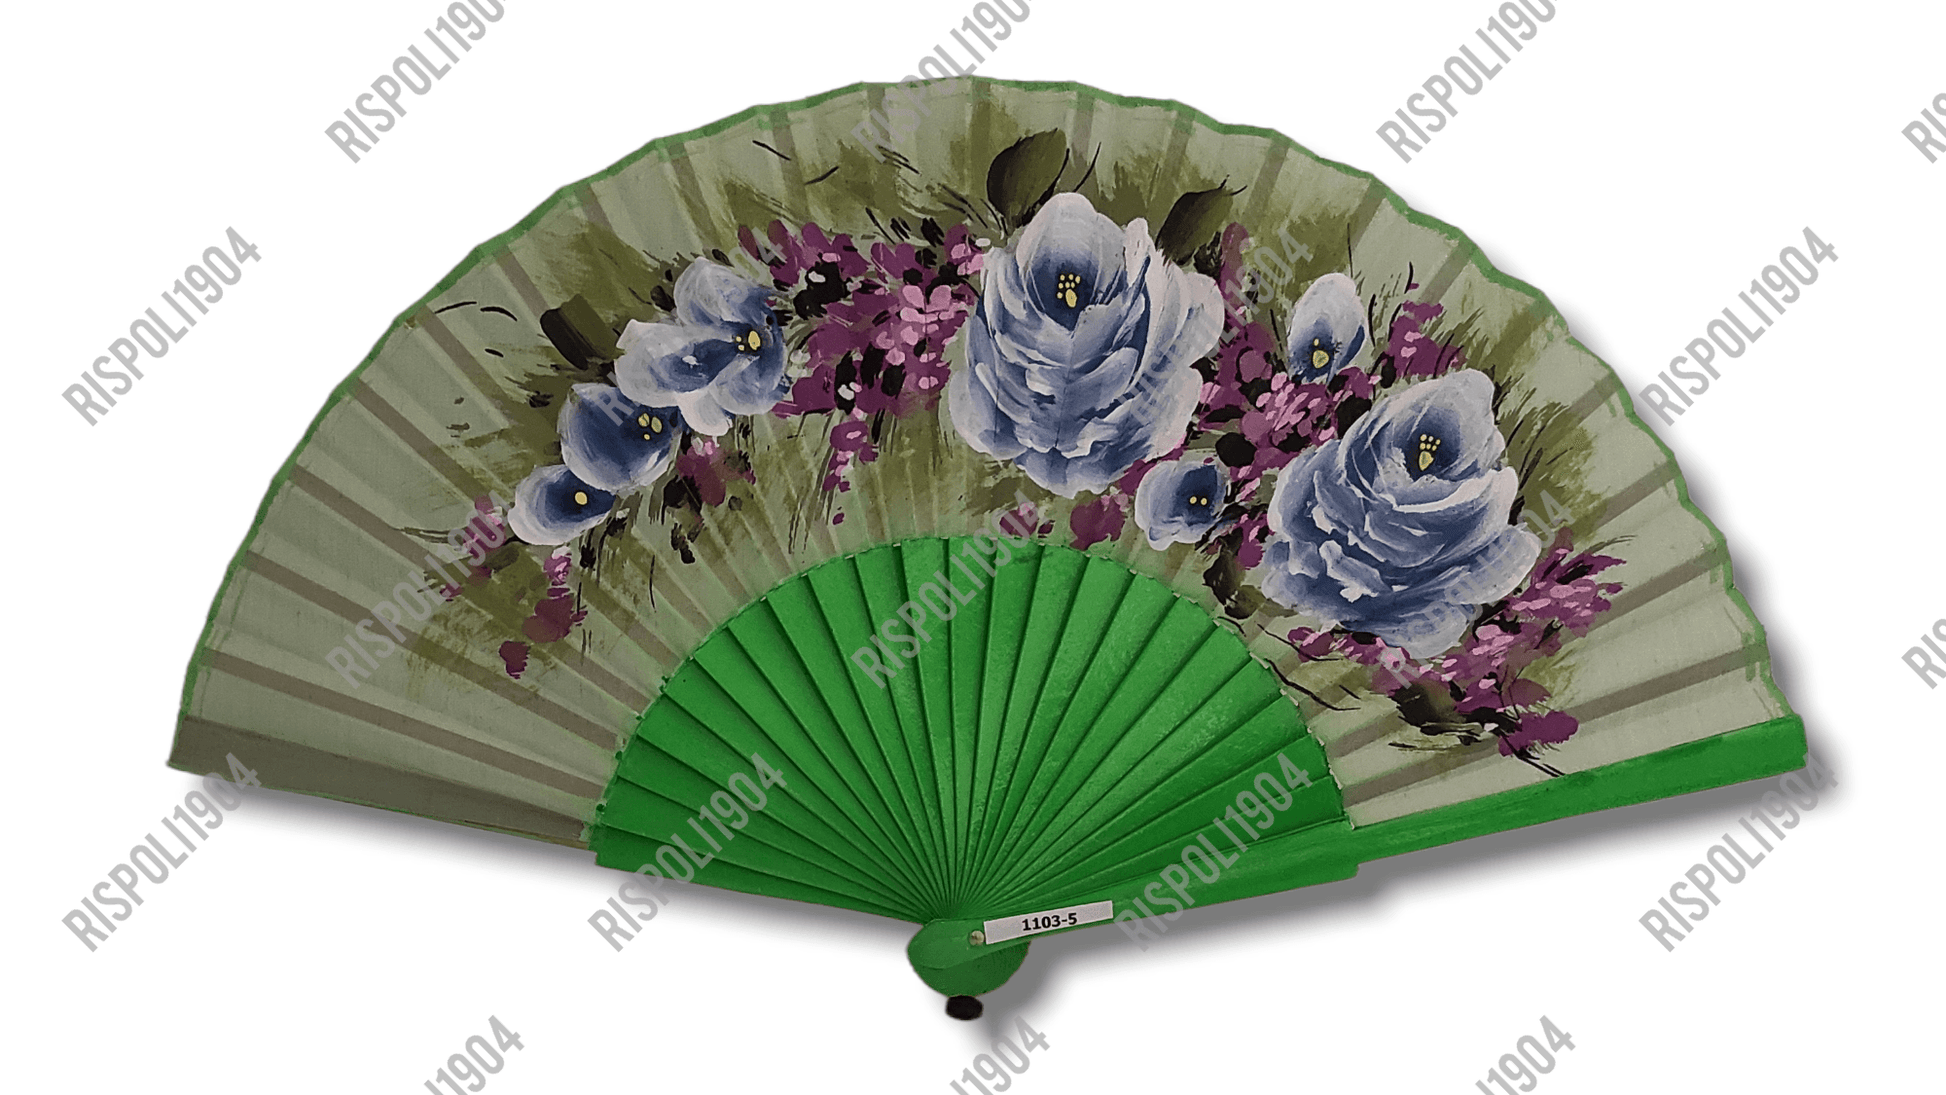 Ventaglio in legno e tessuto con fiori dipinti a mano. Apertura 42 cm. #1103-5 - Merceria Rispoli